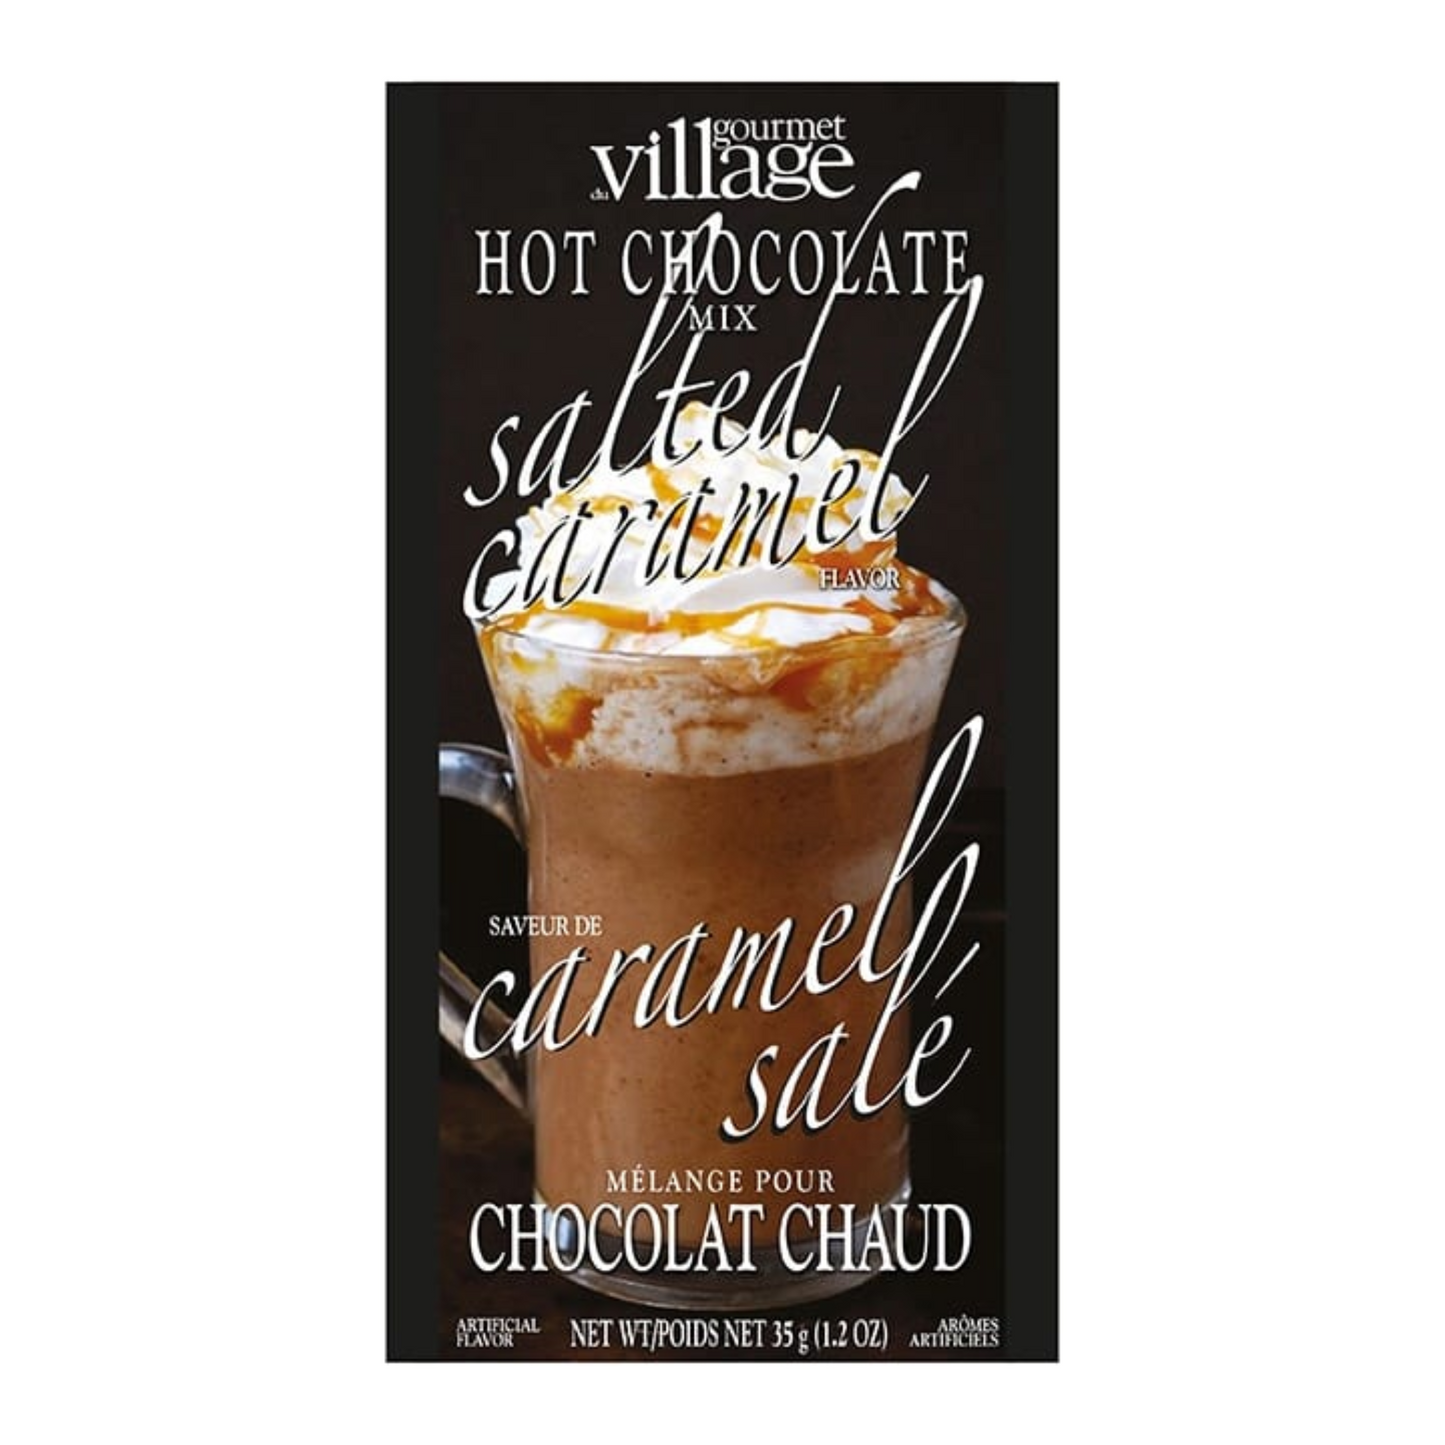 Chocolat chaud Caramel salé